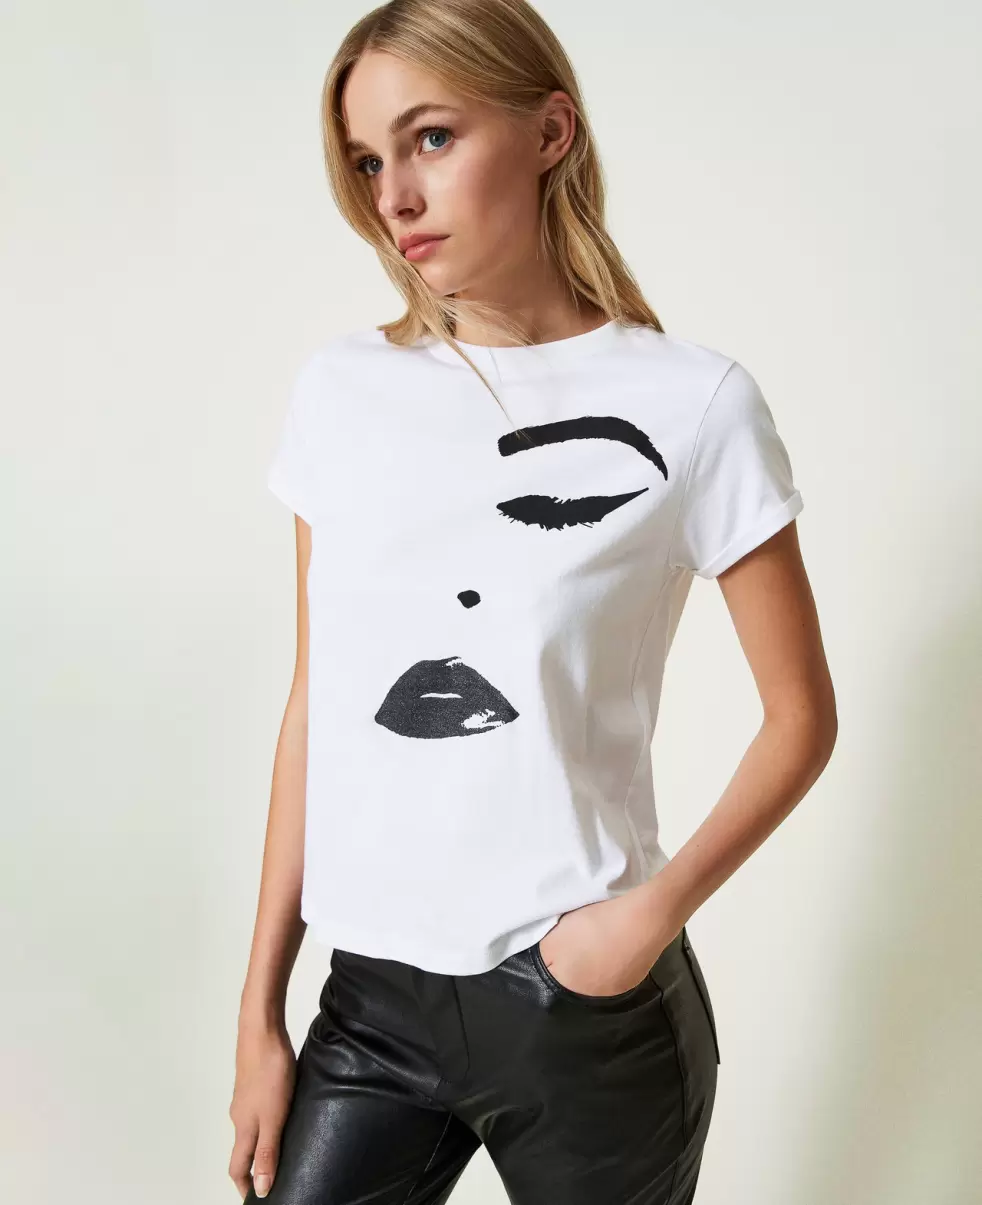 Twinset Damen T-Shirts Und Tops T-Shirt Im Regular-Fit Mit Print Weiß Preisanpassung - 2